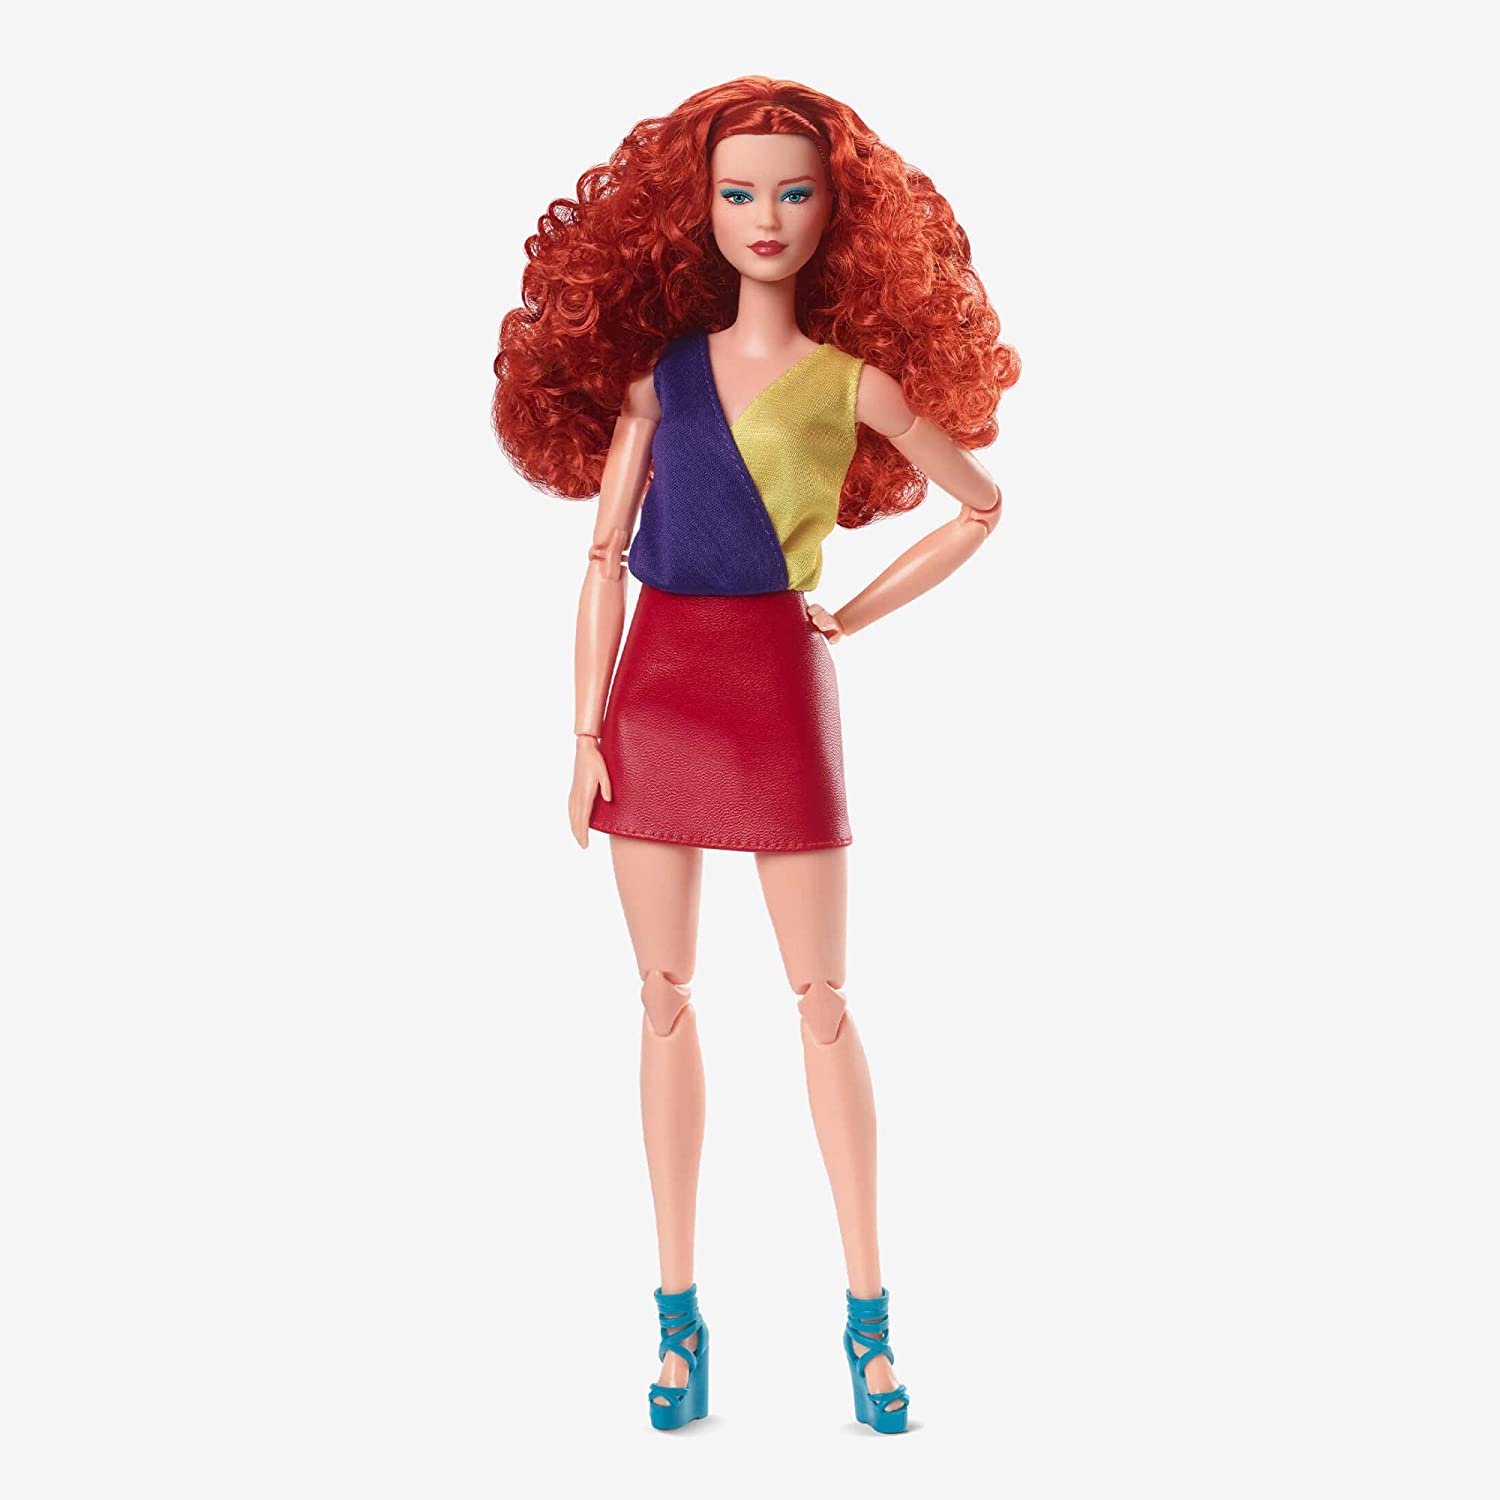  Barbie Looks Ken Doll with Black Hair Dressed in